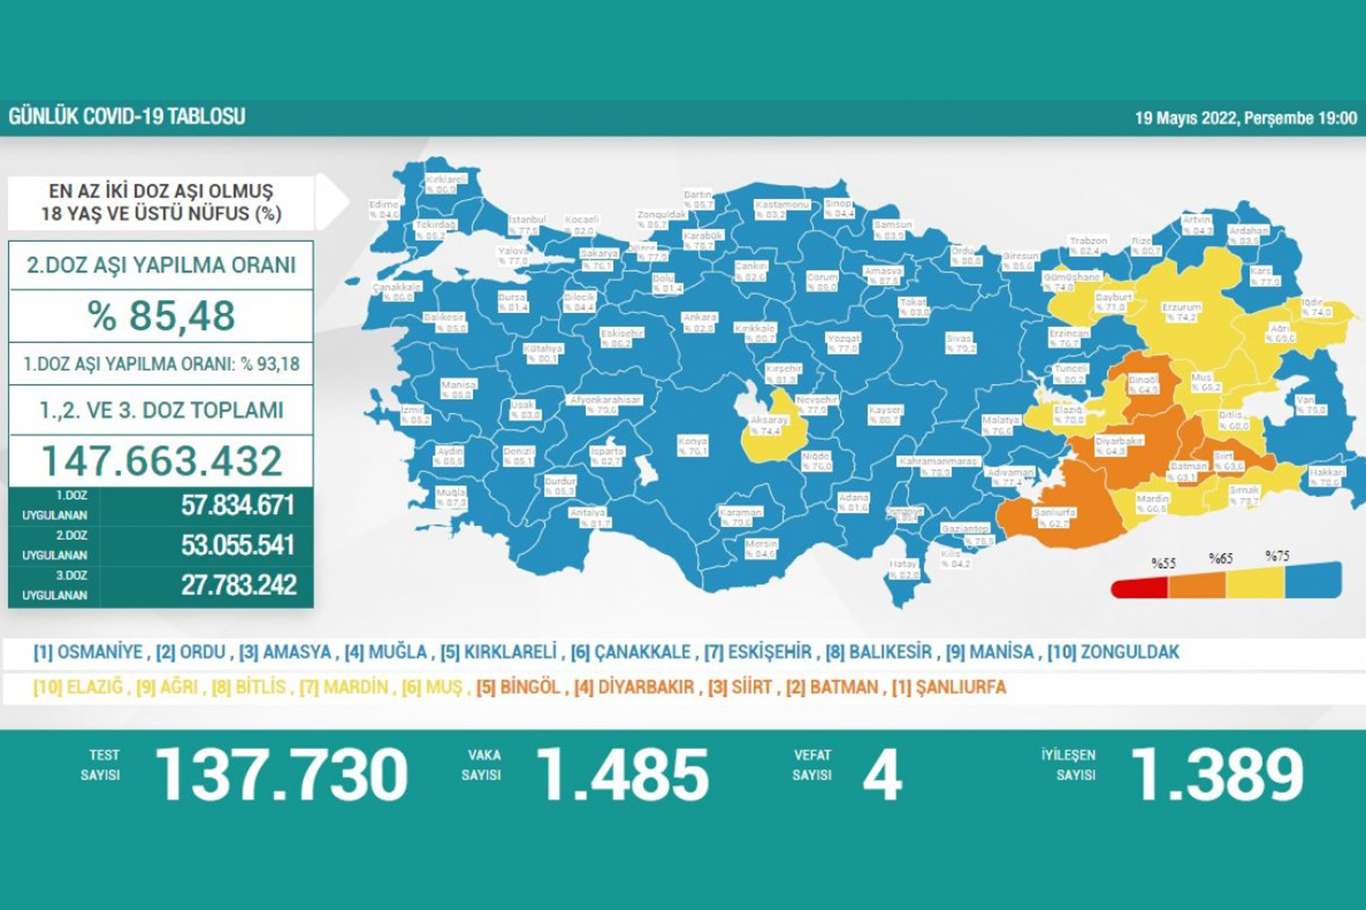 Türkiyede son 24 saatte 1485 yeni vaka tespit edildi  